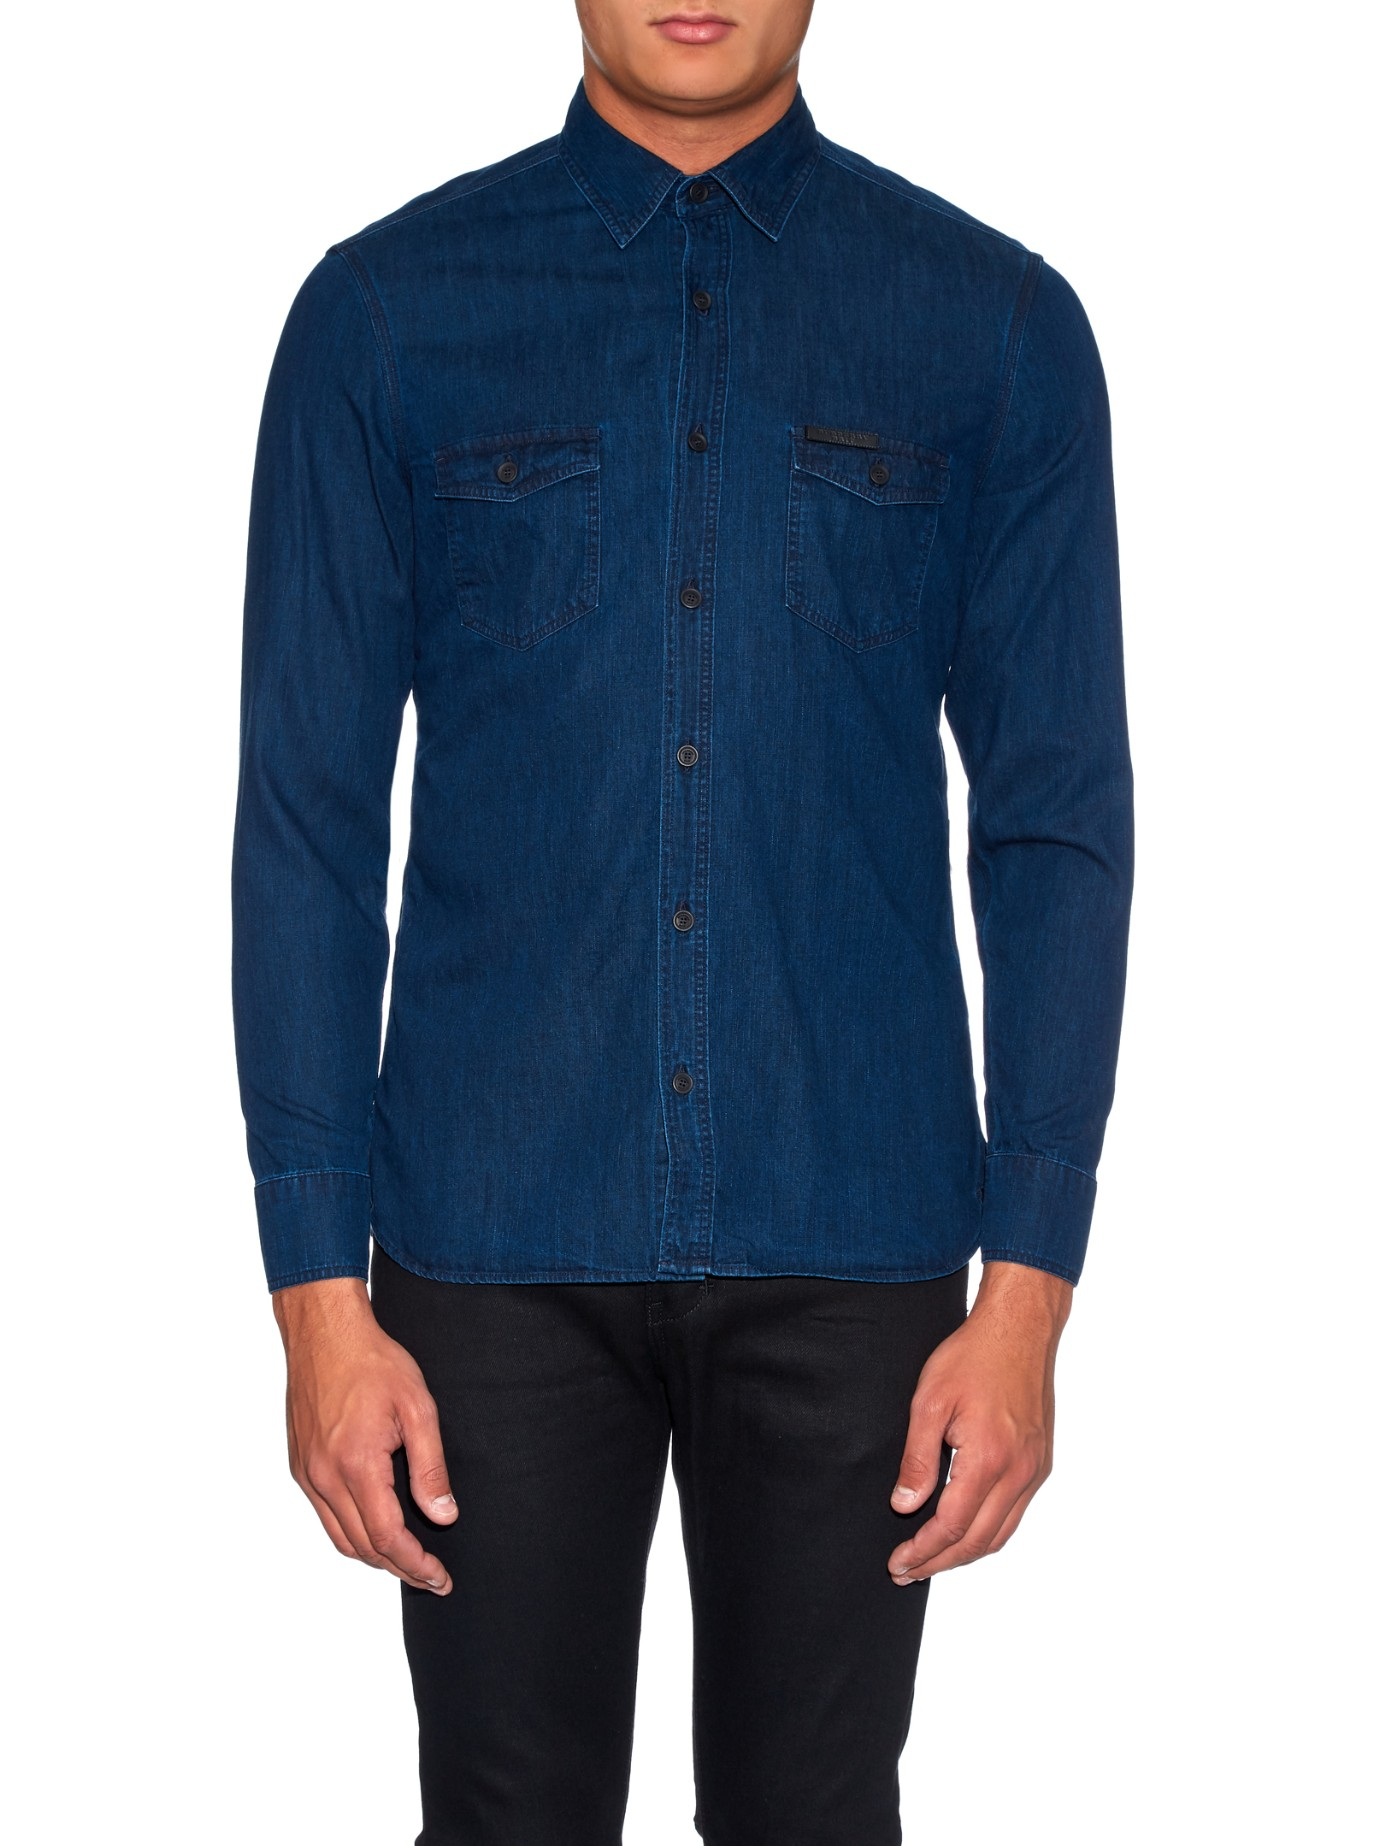 Burberry Brit Zach Denim Shirt in Indigo (Blue) for Men - Lyst